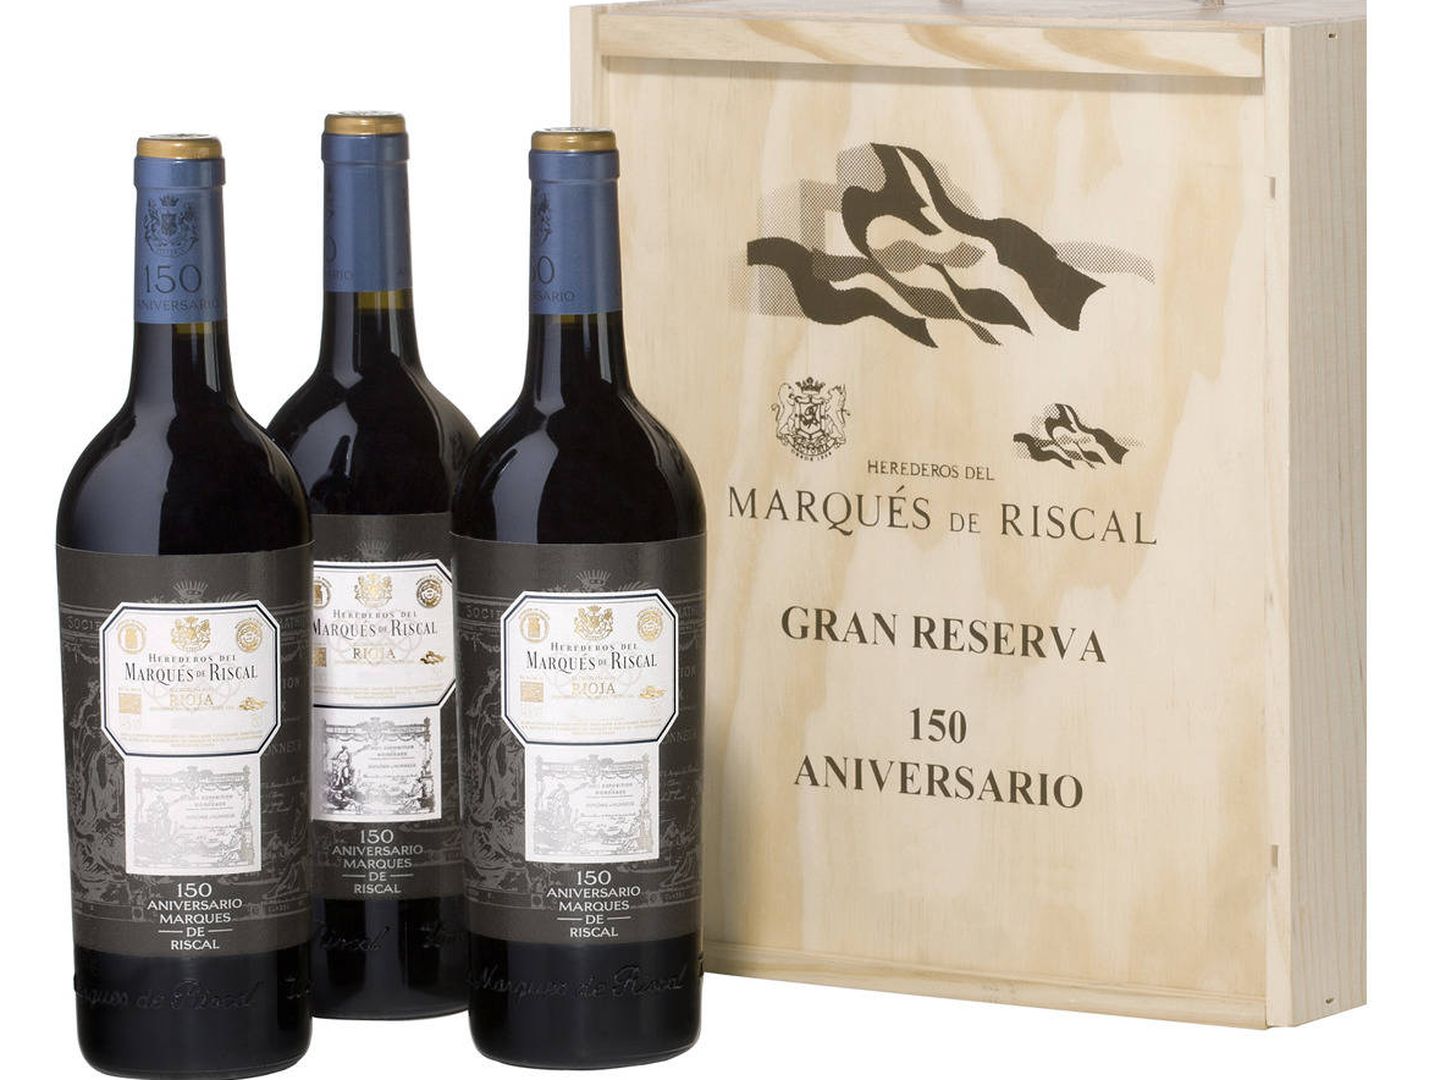 Botellas de Marqués de Riscal.